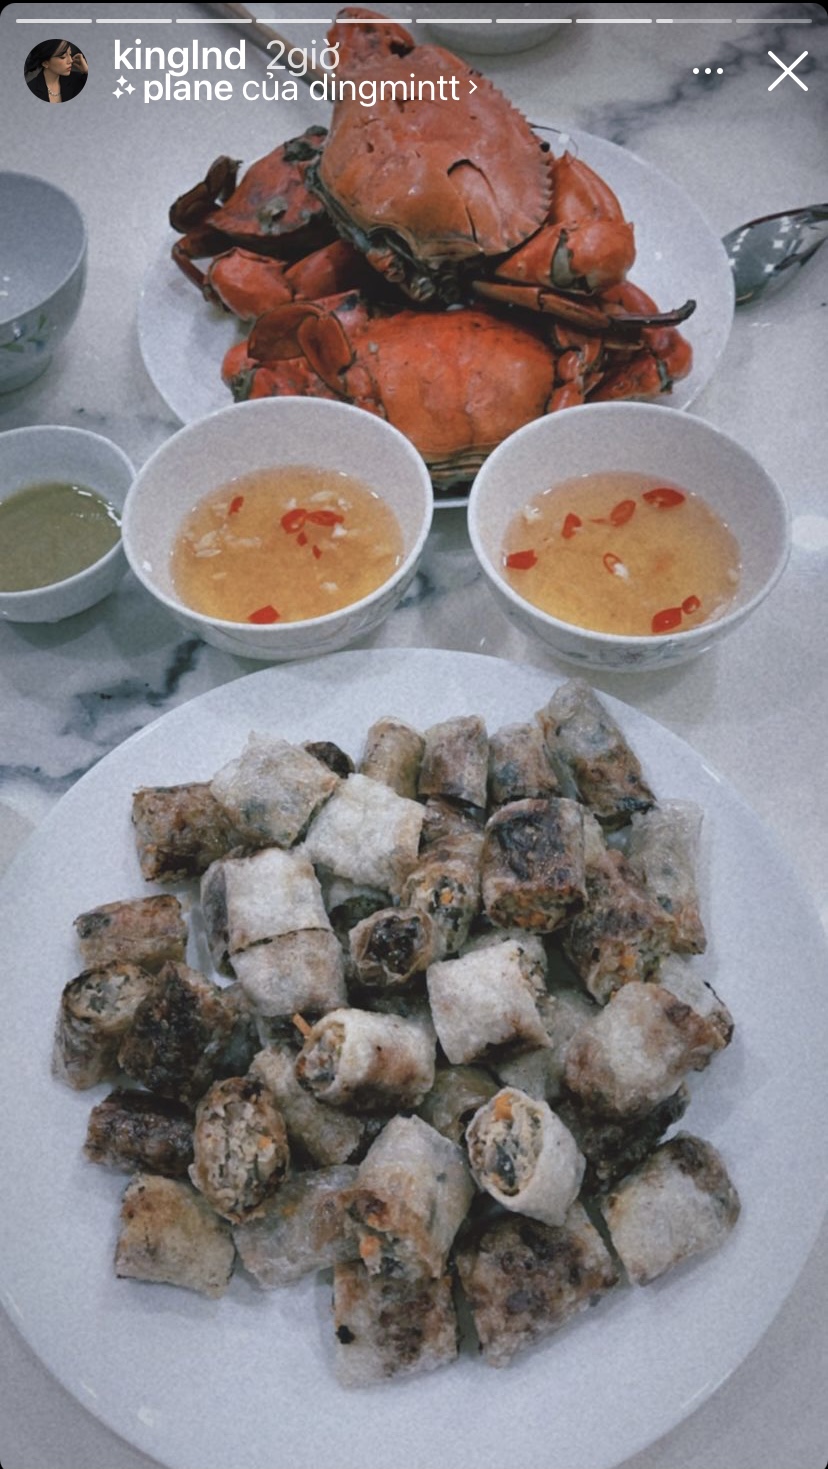 Nem và cua hấp là những món ăn xuất hiện trên bàn ăn nhà streamer Linh Ngọc Đàm hôm nay.